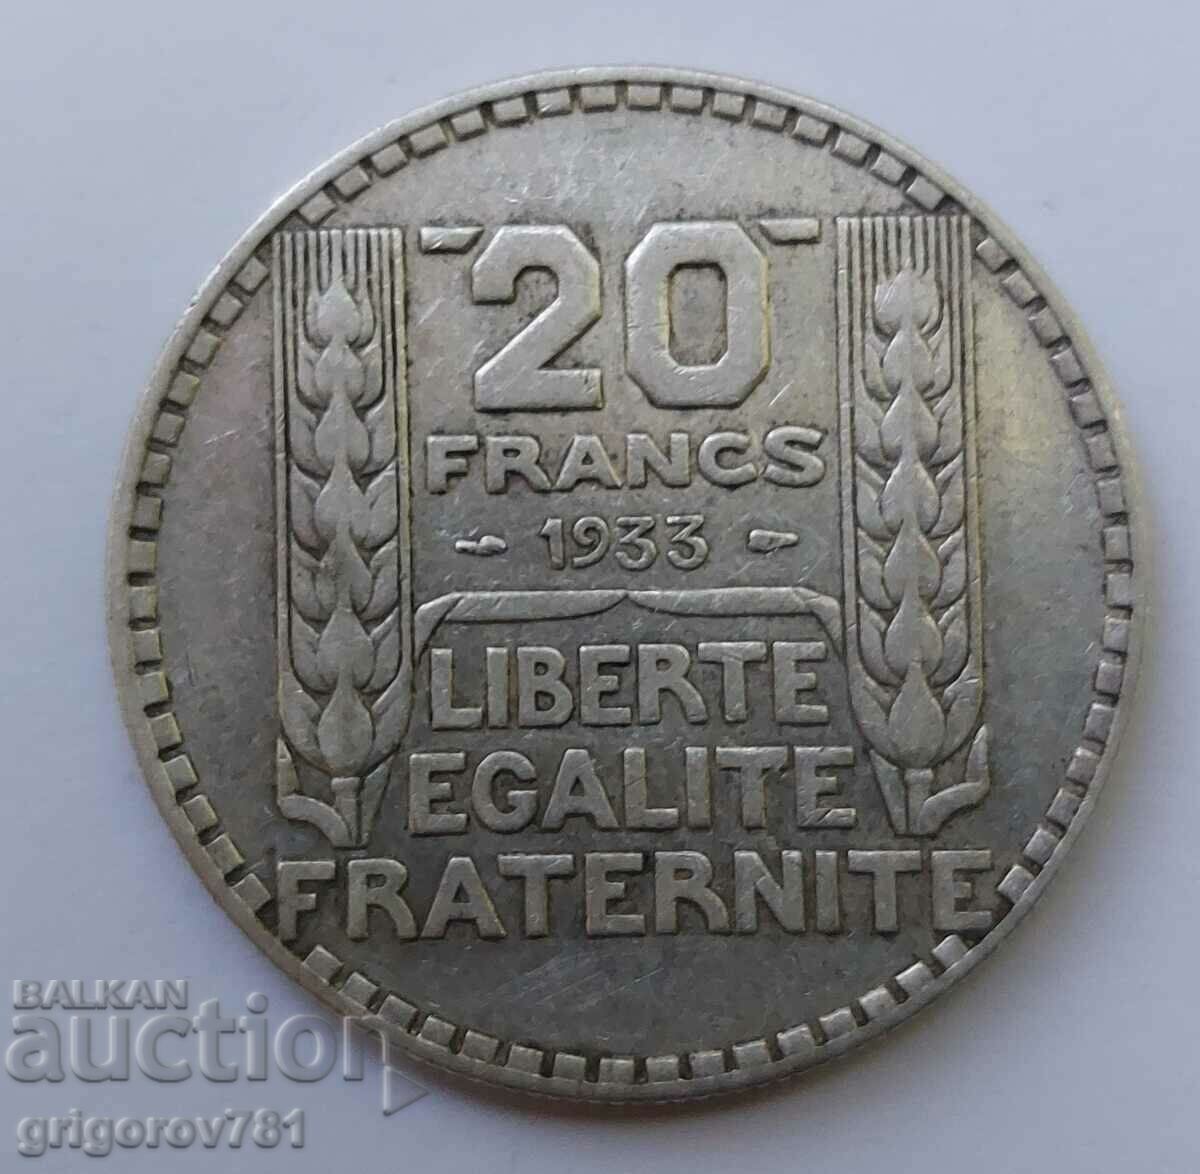 20 Φράγκα Ασήμι Γαλλία 1933 - Ασημένιο νόμισμα #28